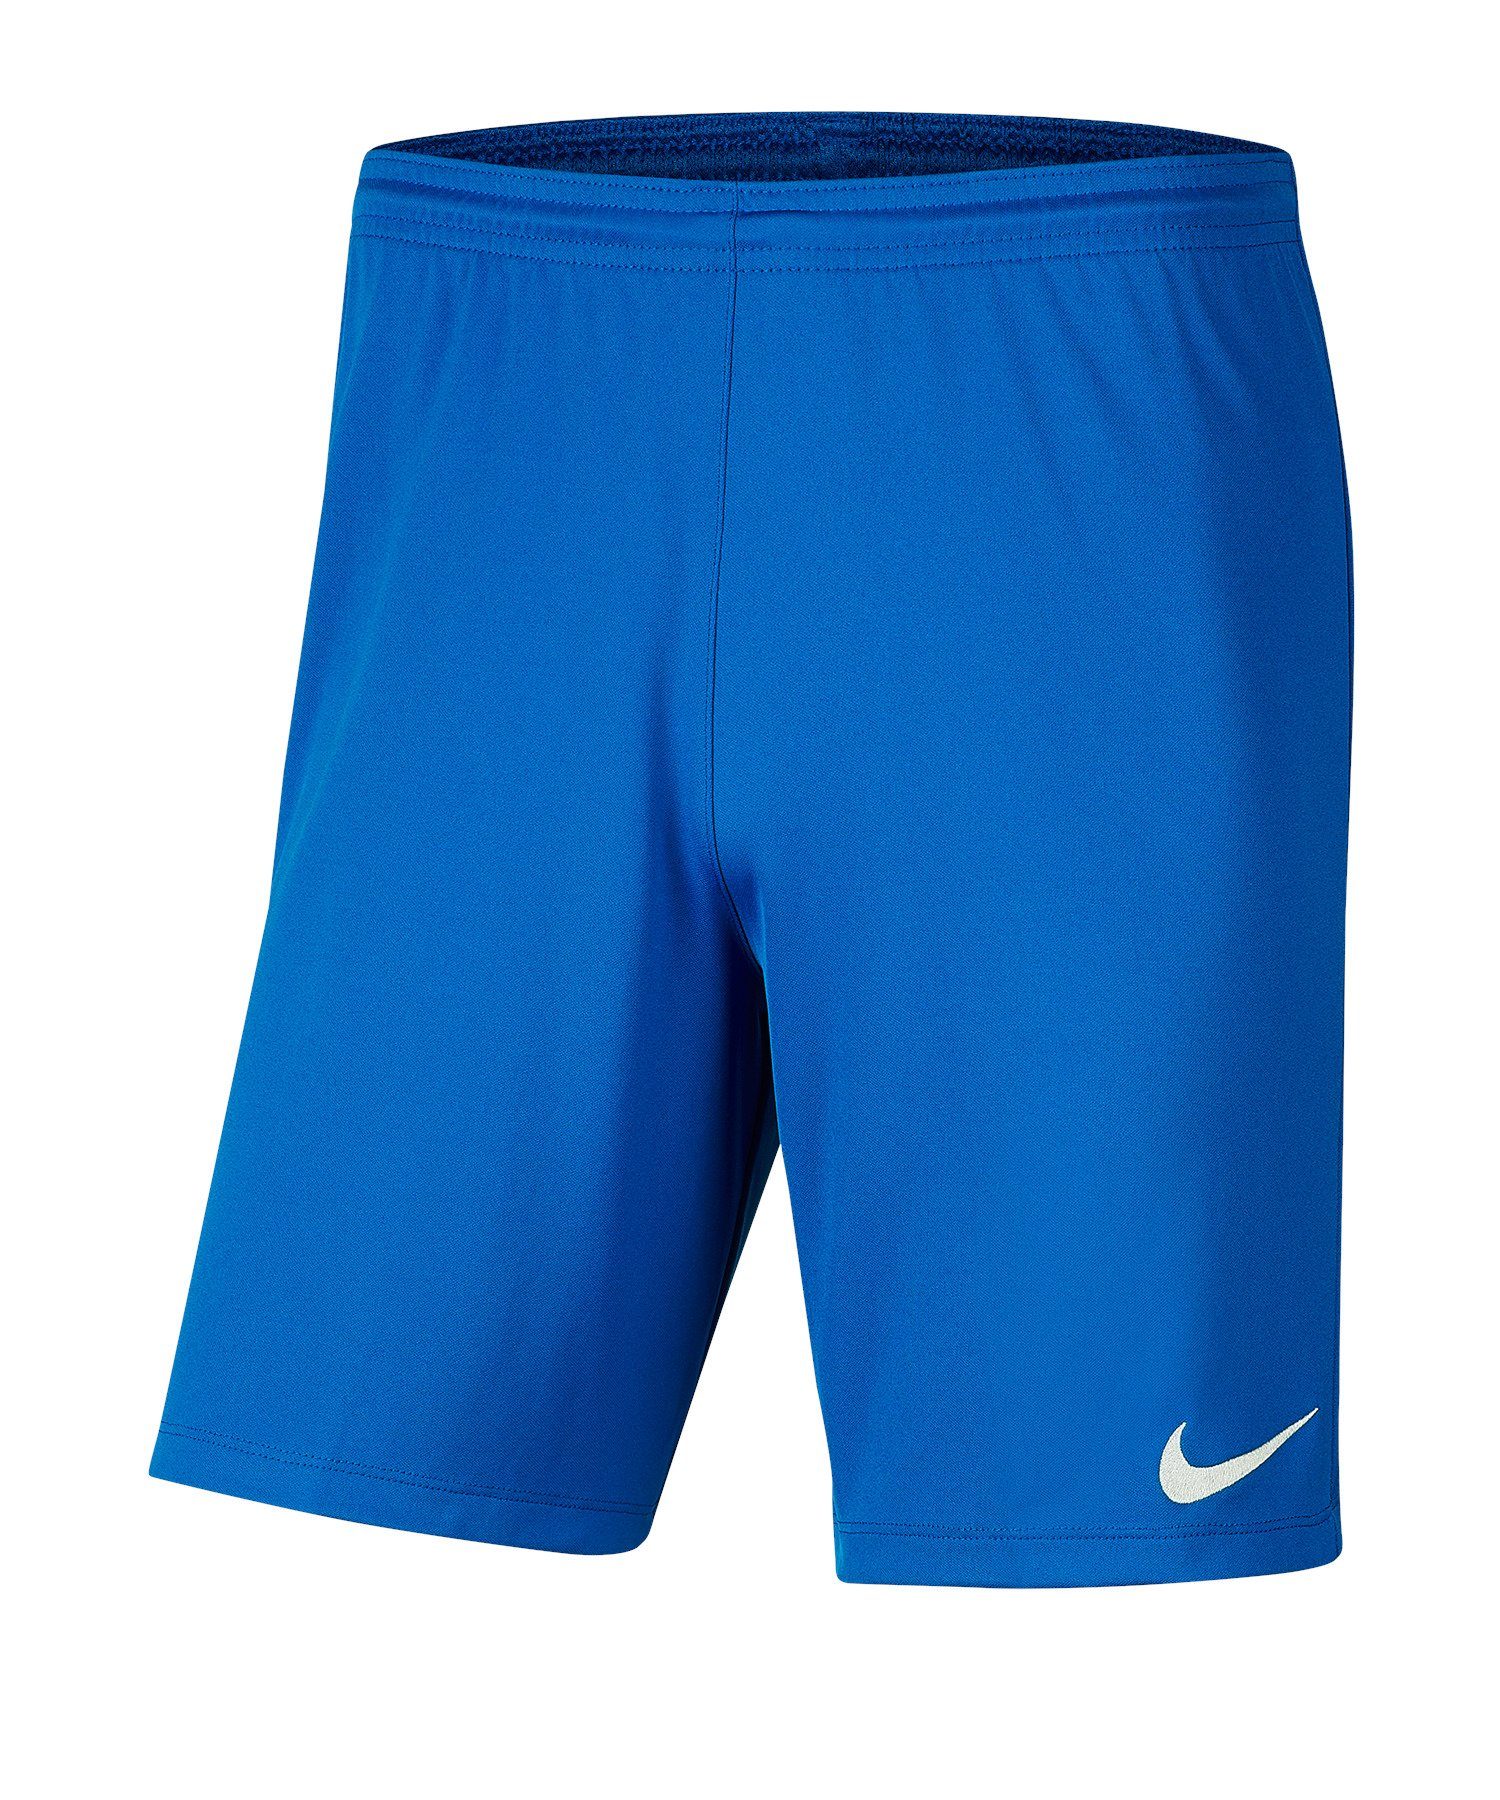 Nike Sporthose Park III Short Kids blaublau